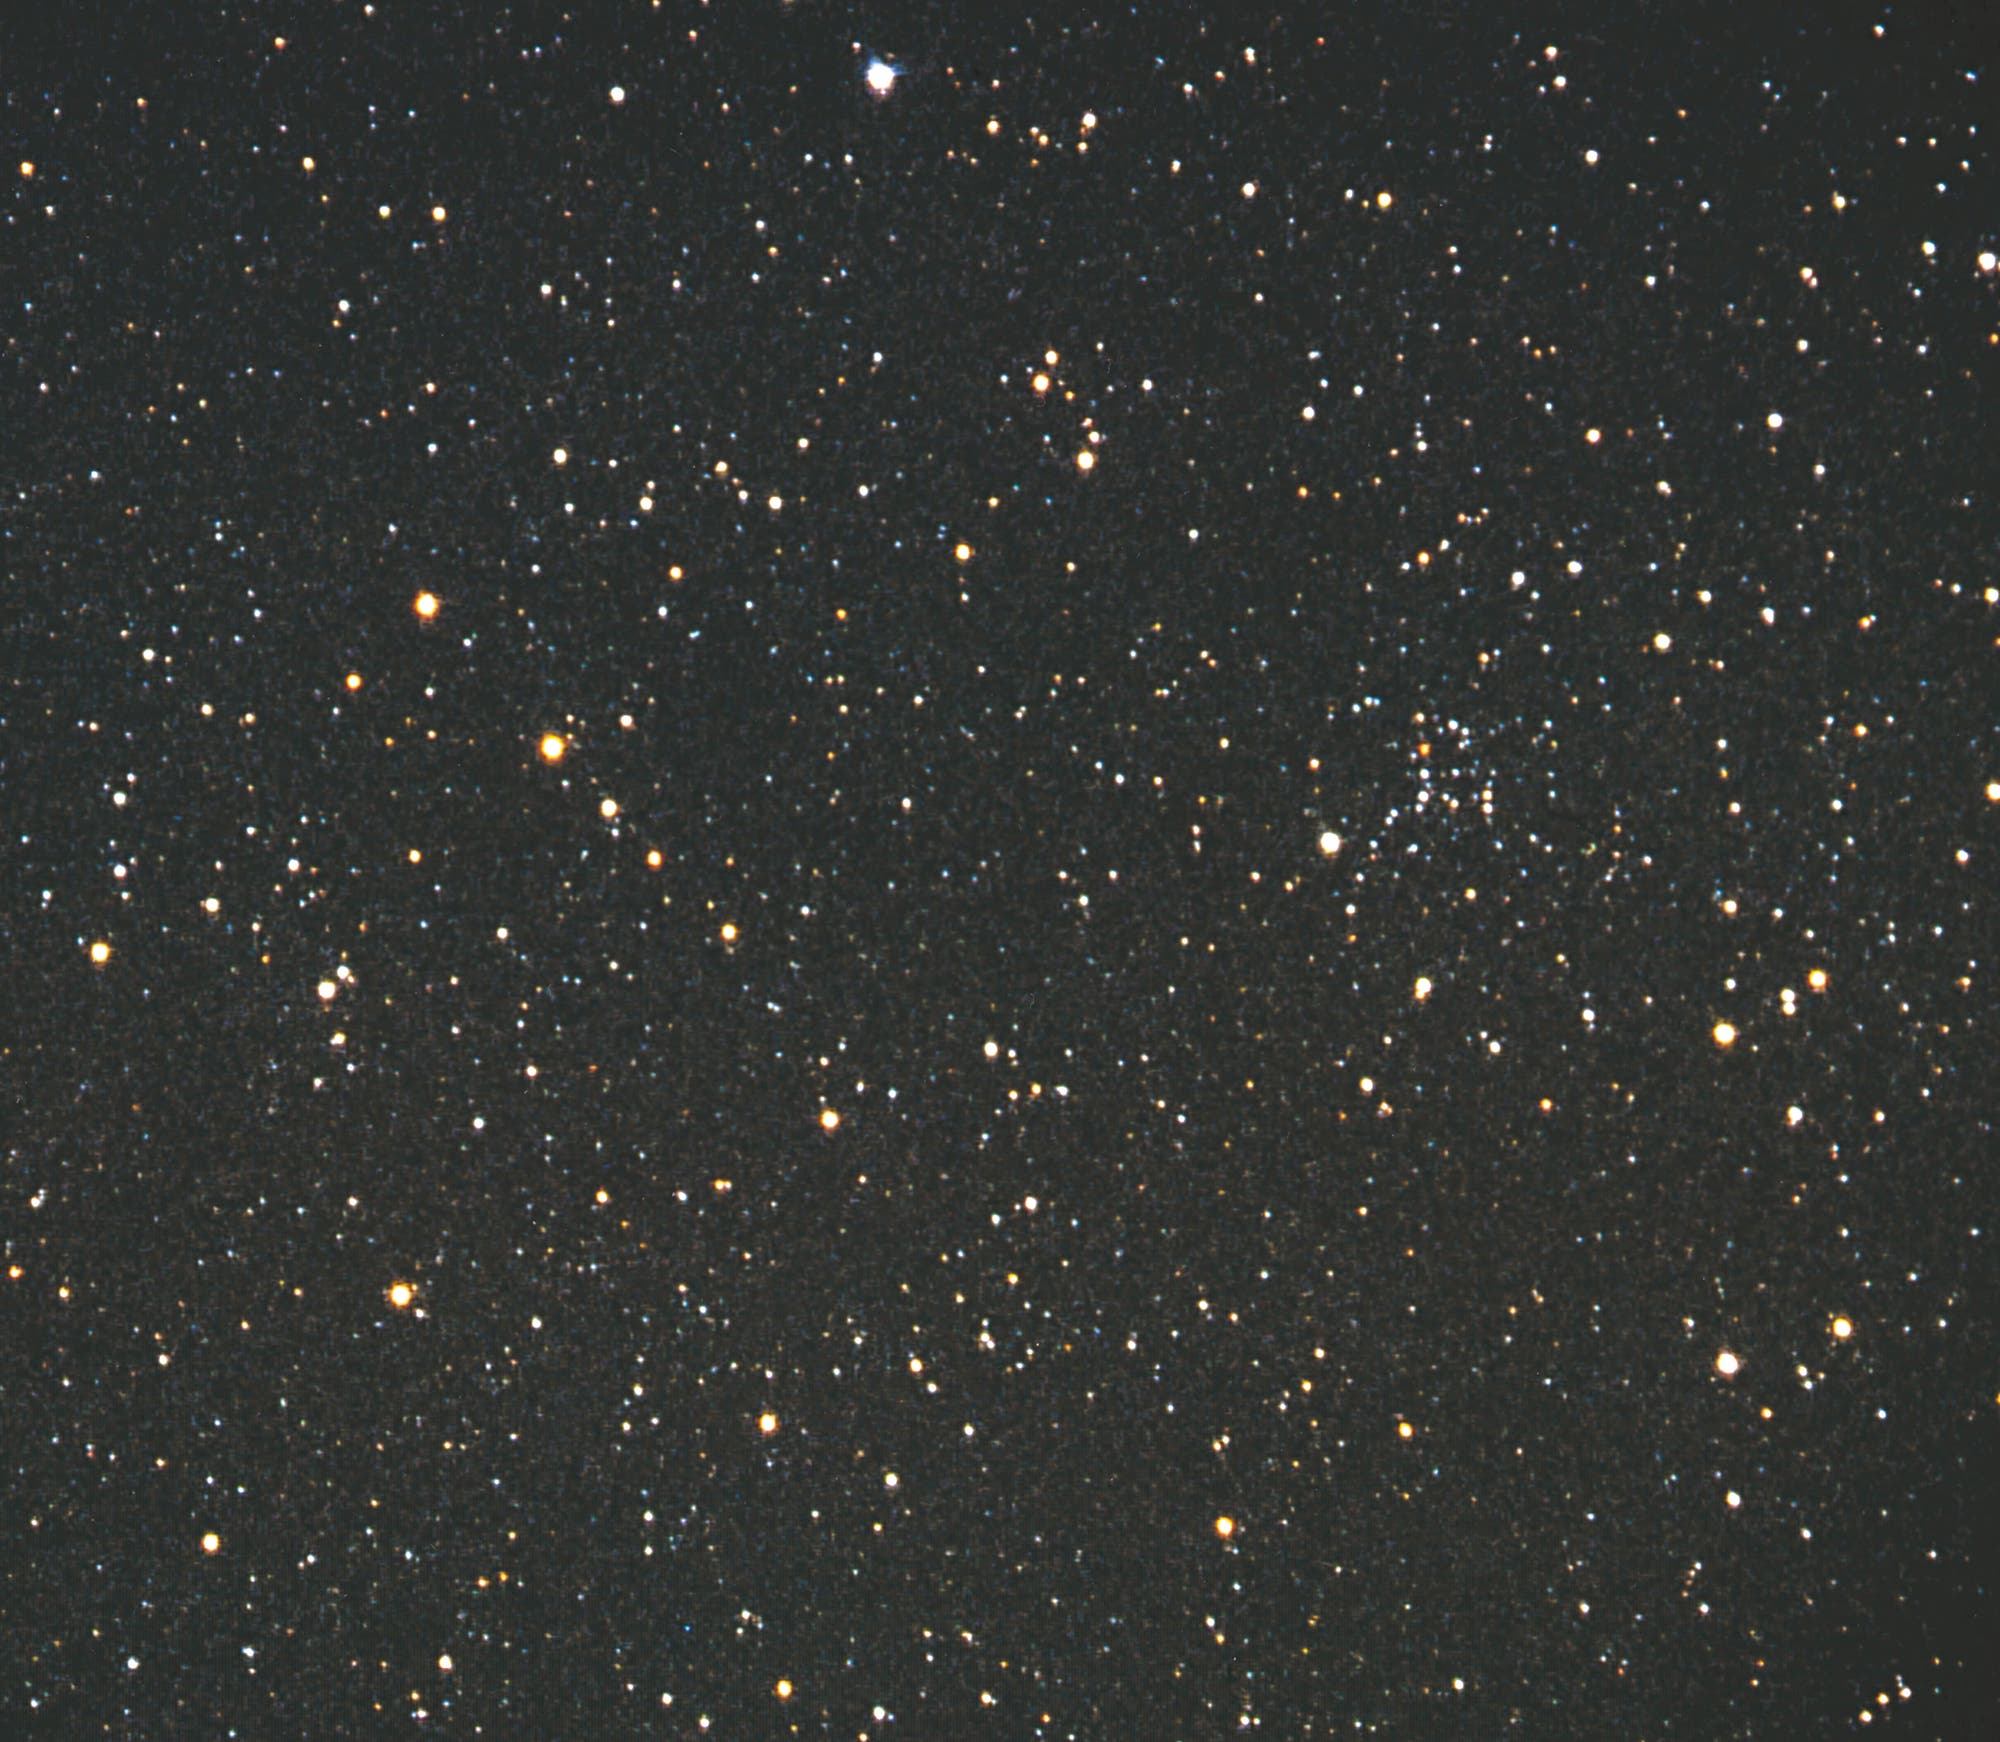 Der offene Sternhaufen NGC 1664